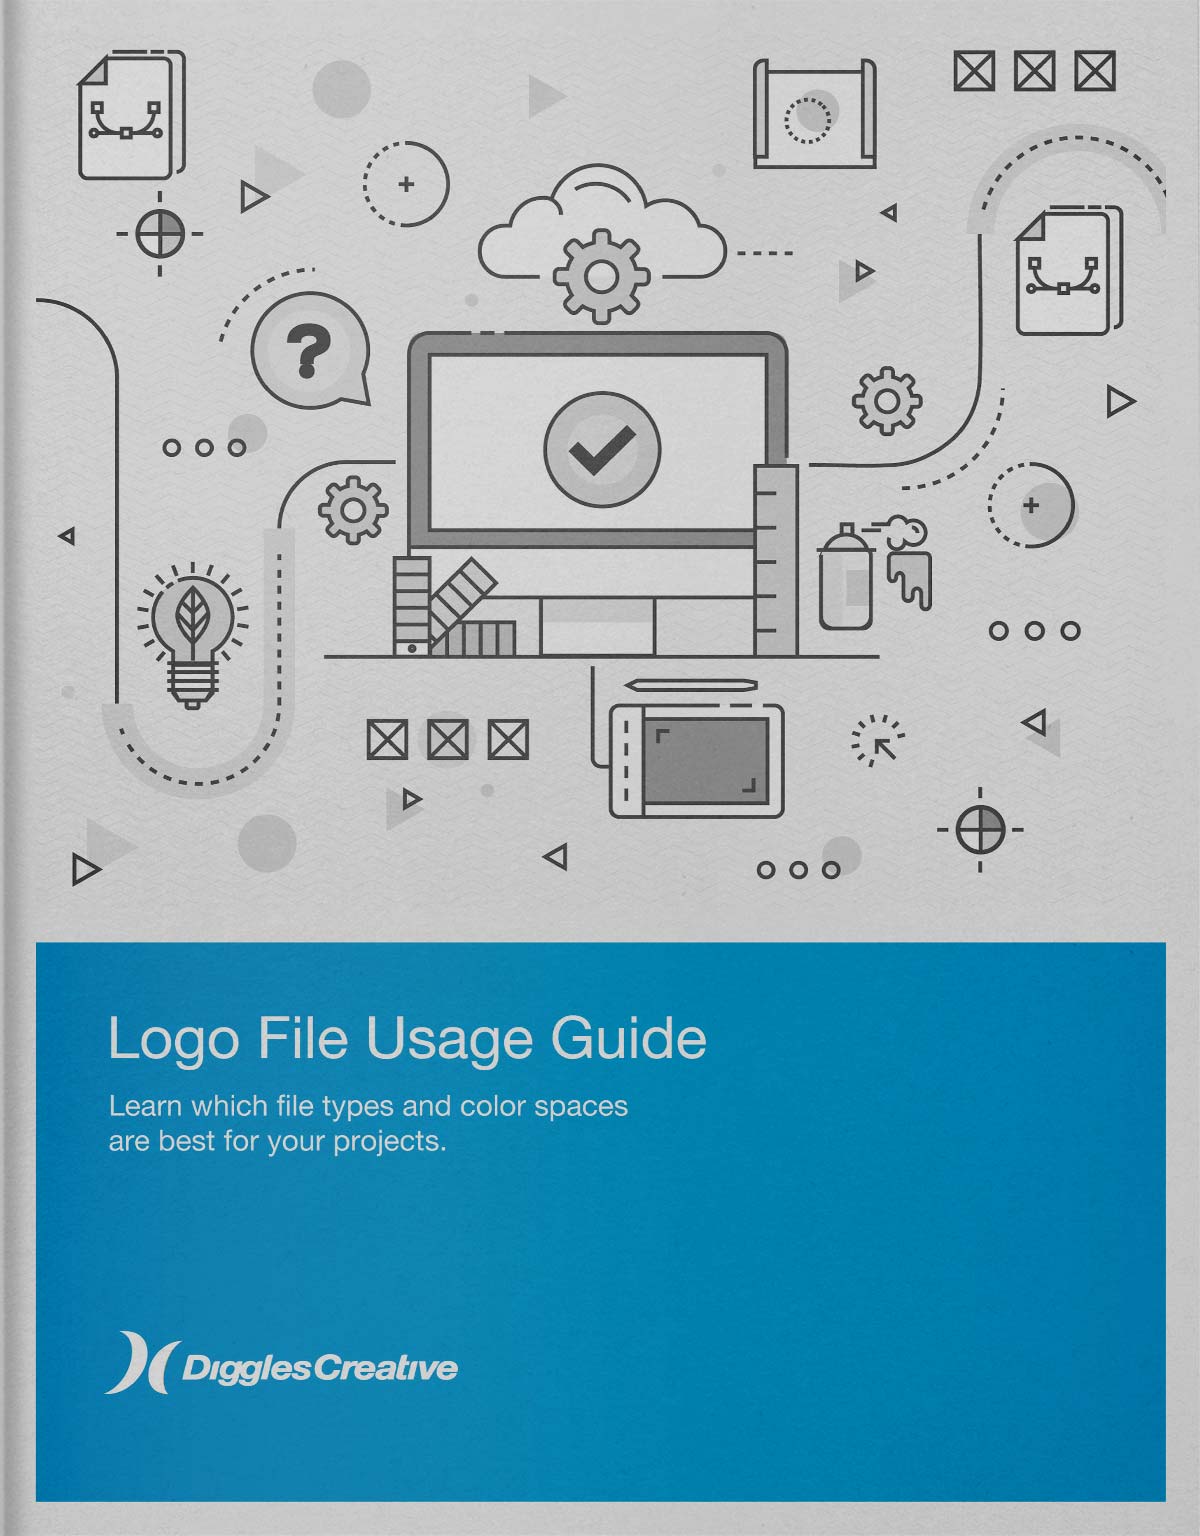 Guide - Logo File Usage